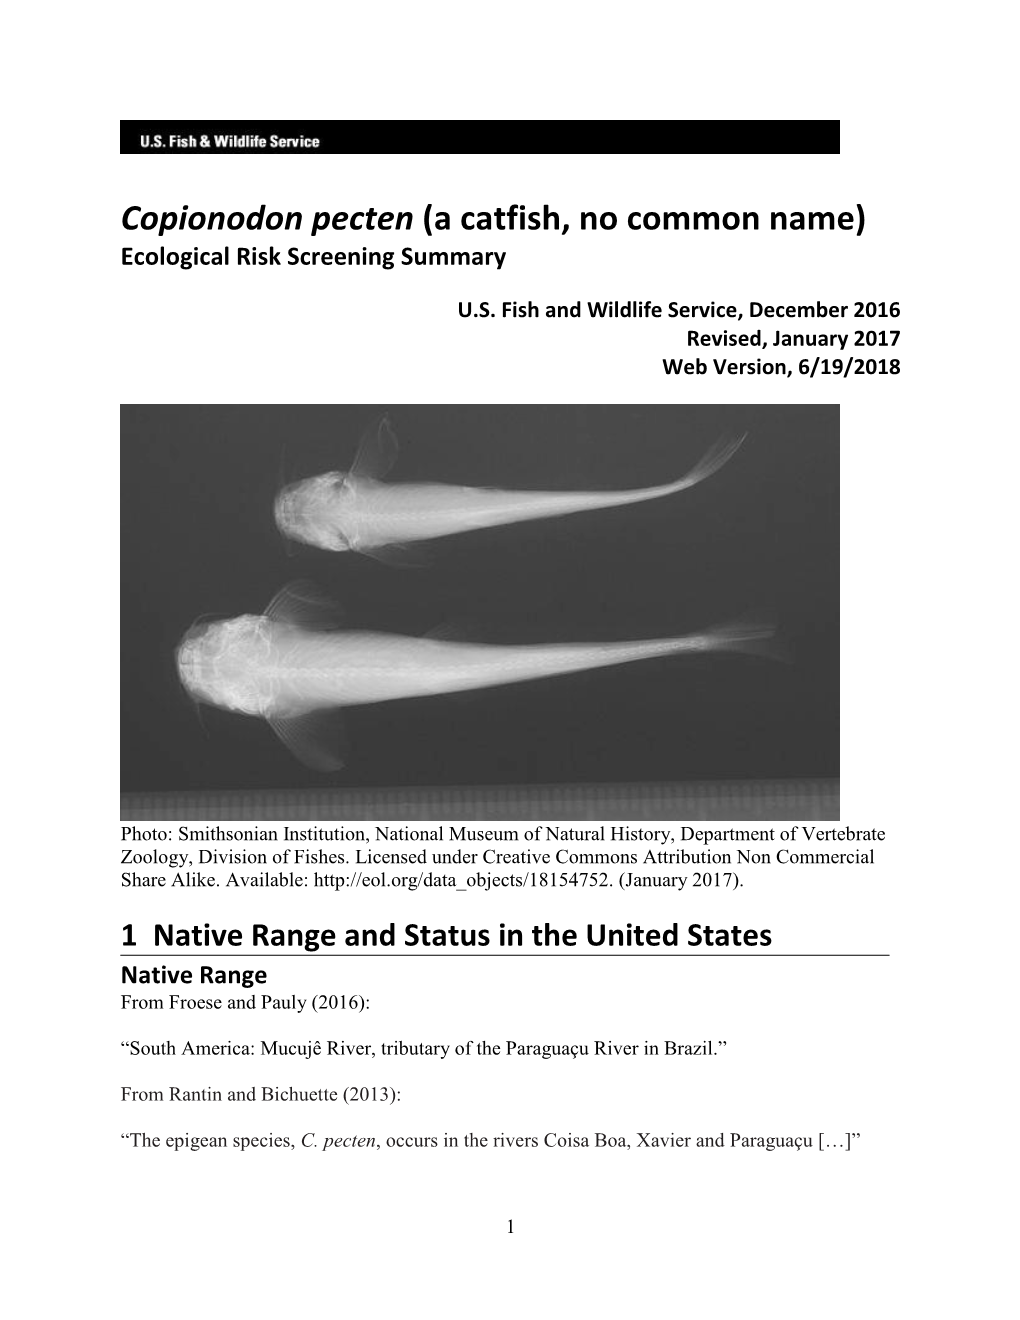 Copionodon Pecten (A Catfish, No Common Name) Ecological Risk Screening Summary